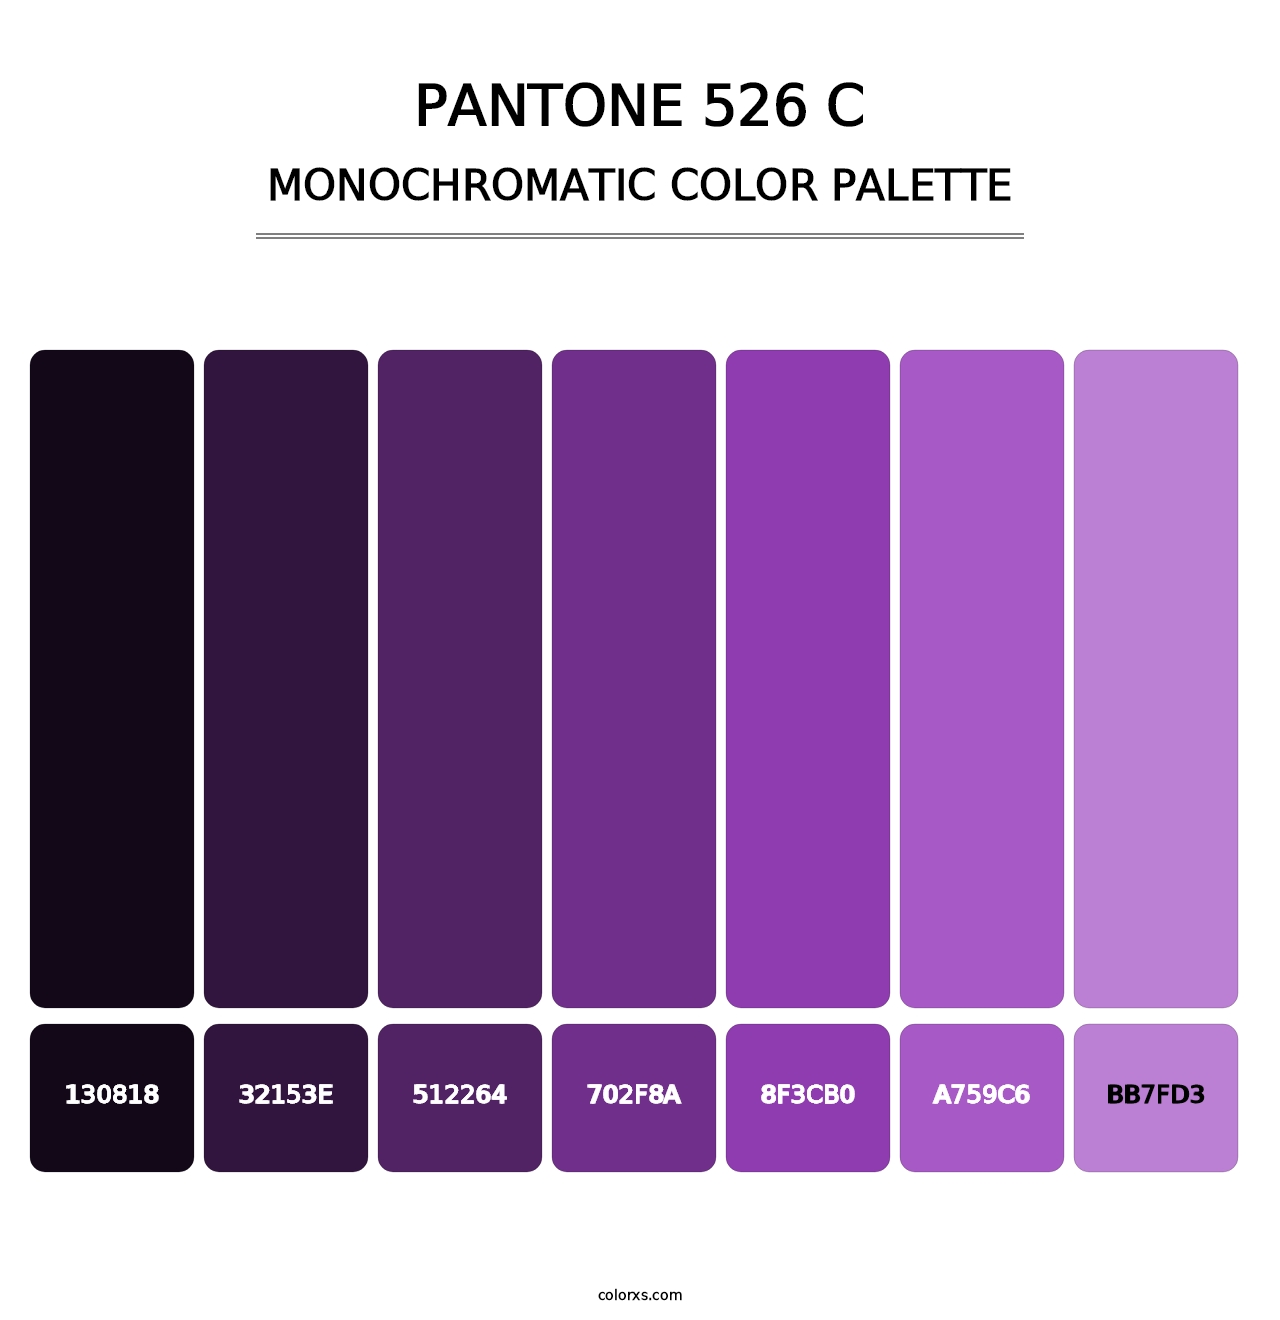 PANTONE 526 C - Monochromatic Color Palette